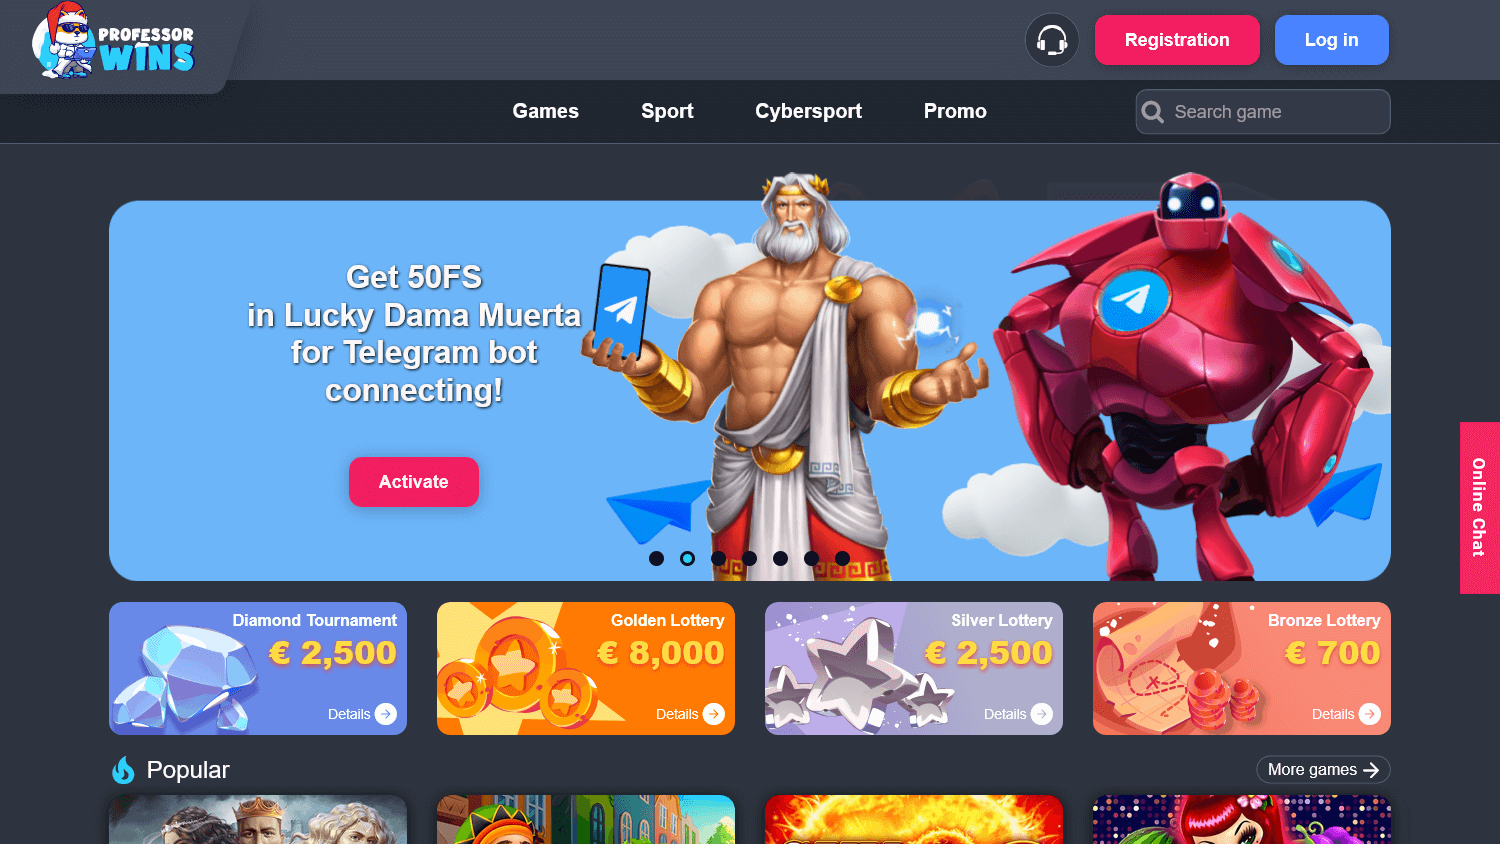 professor_wins_casino_homepage_desktop